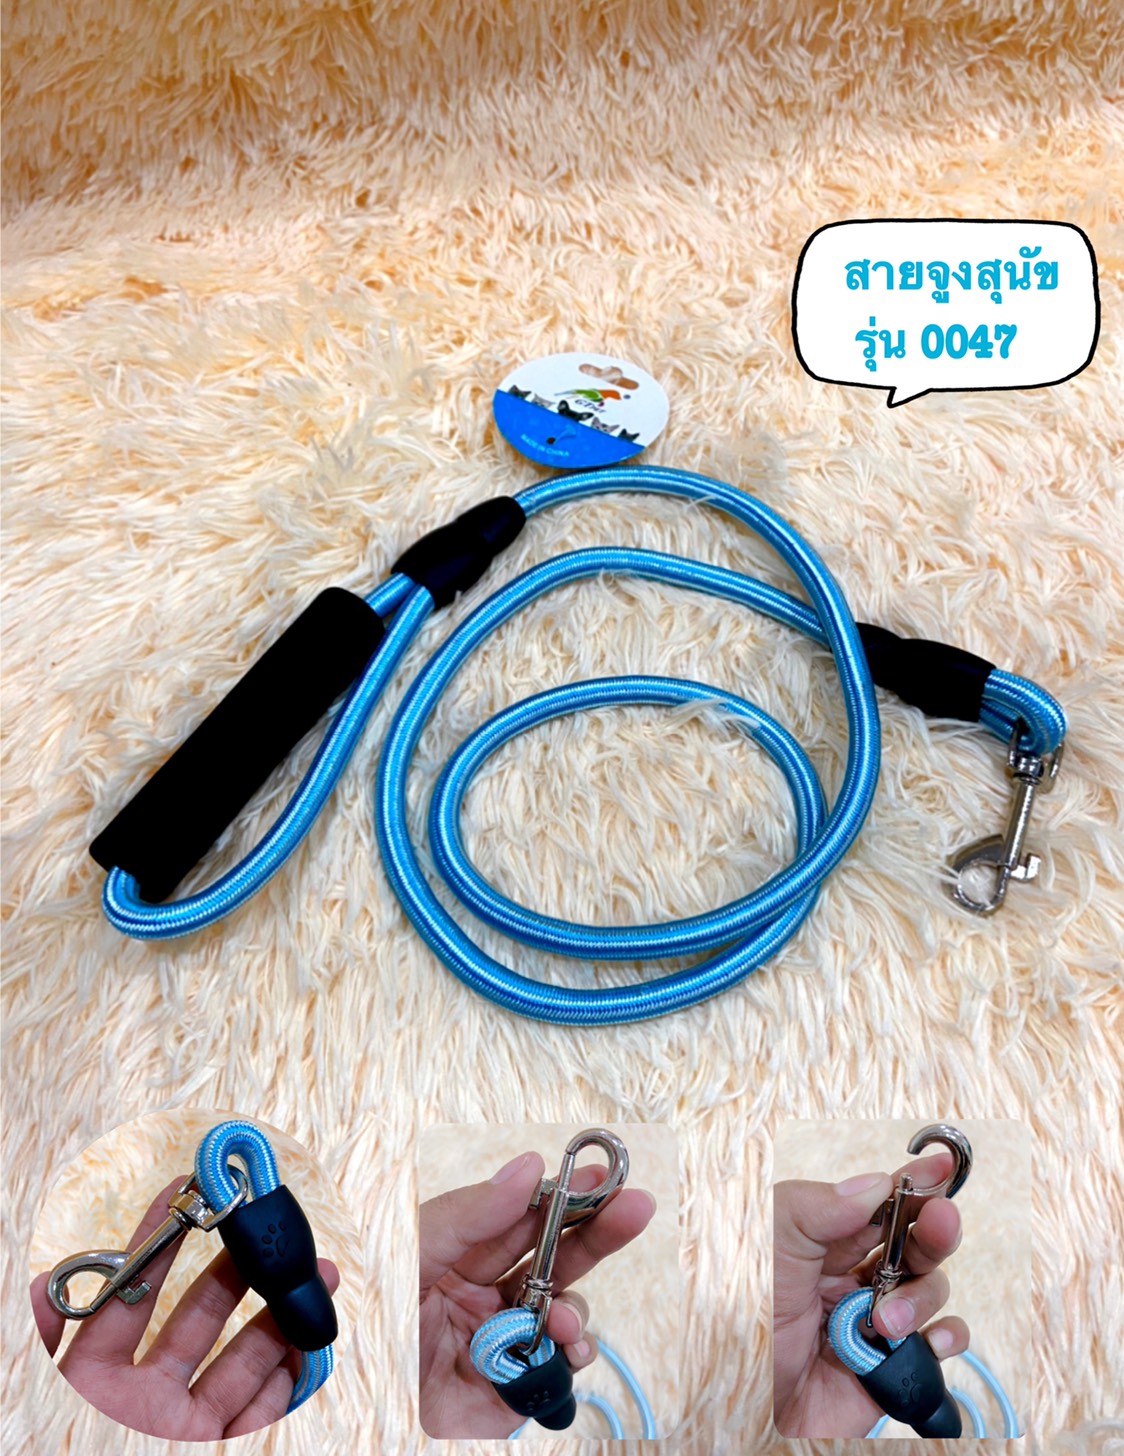 อุปกรณ์สำหรับสัตว์เลี้ยงเชือกดึง,ไนลอนเชือกกลม,สุนัขขนาดใหญ่สายจูงเชือกดึง (0047)